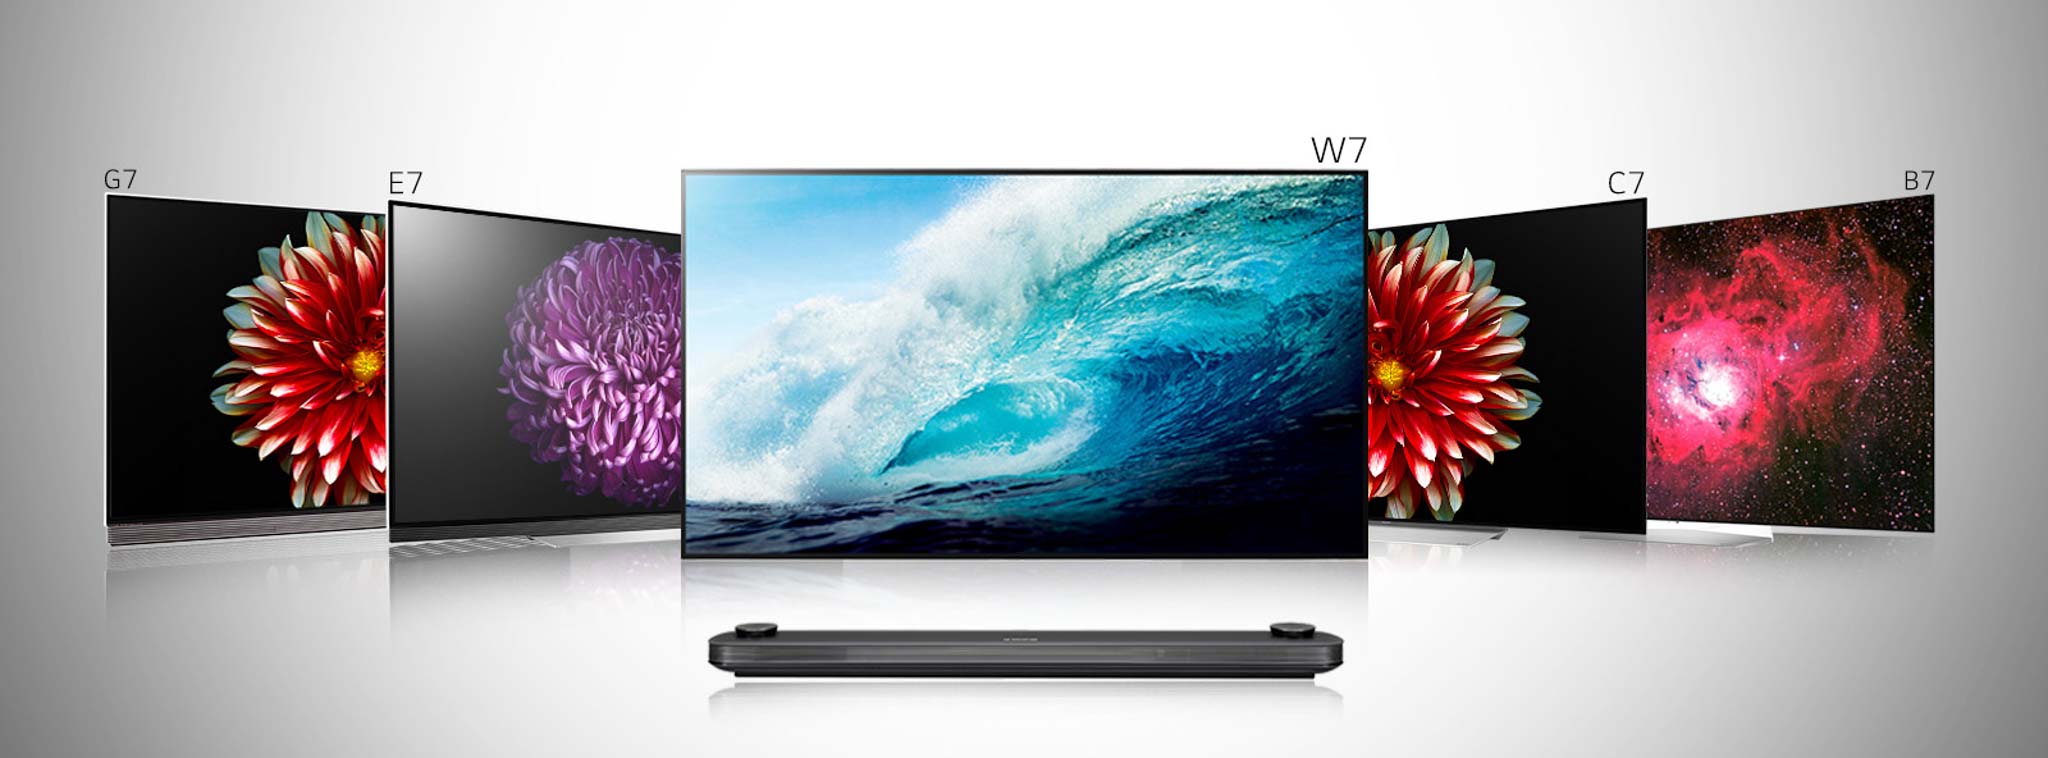 TV OLED LG 2017 được cập nhật công nghệ Dolby TrueHD, hỗ trợ phát âm thanh Atmos lossless